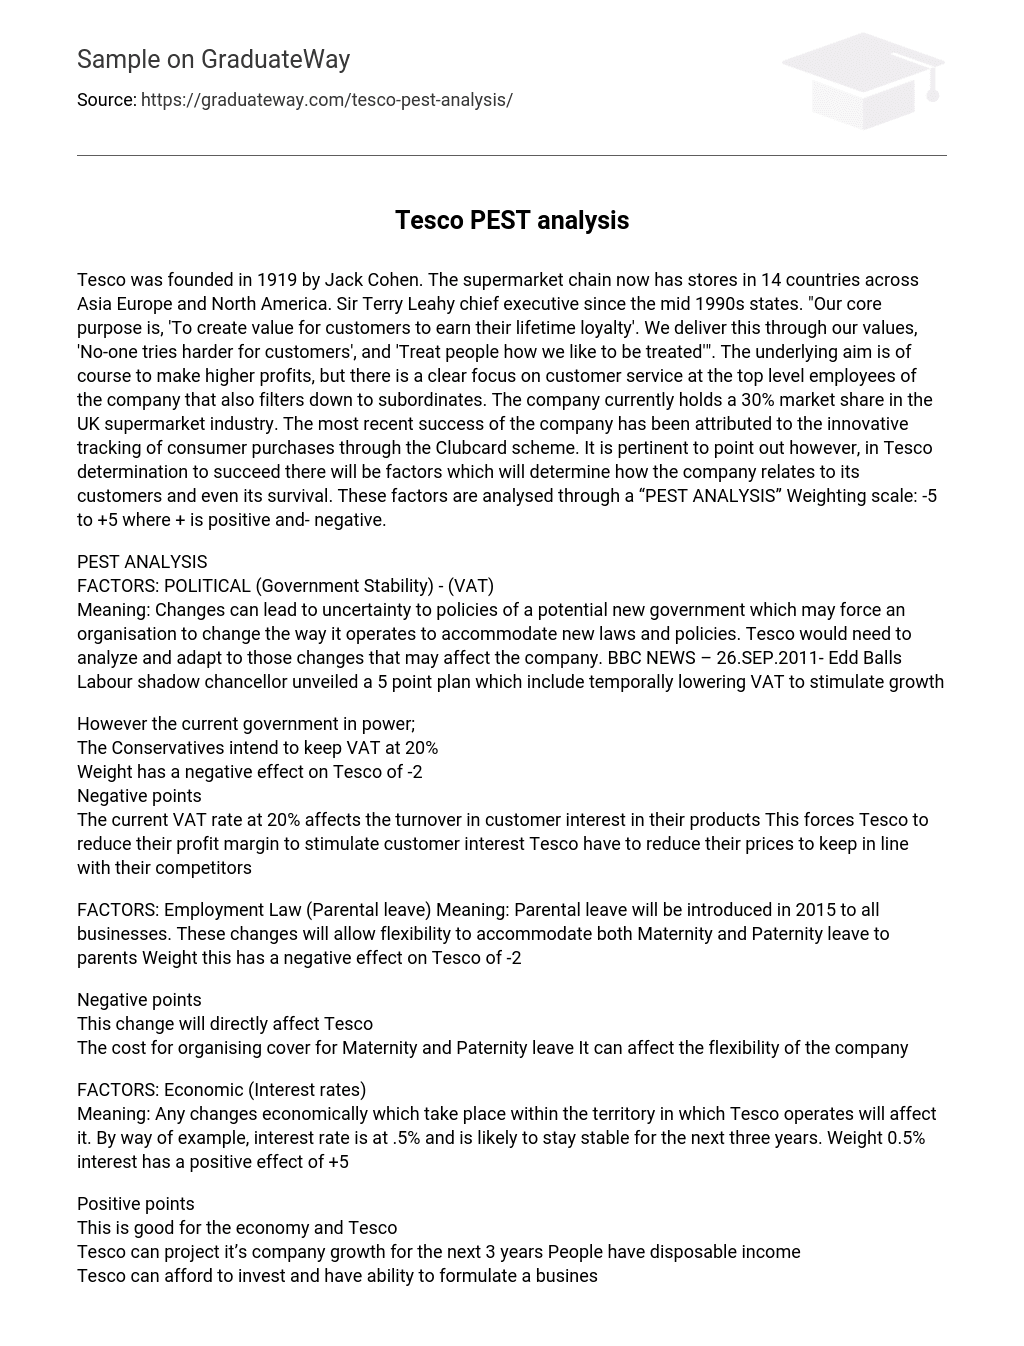 Tesco PEST analysis